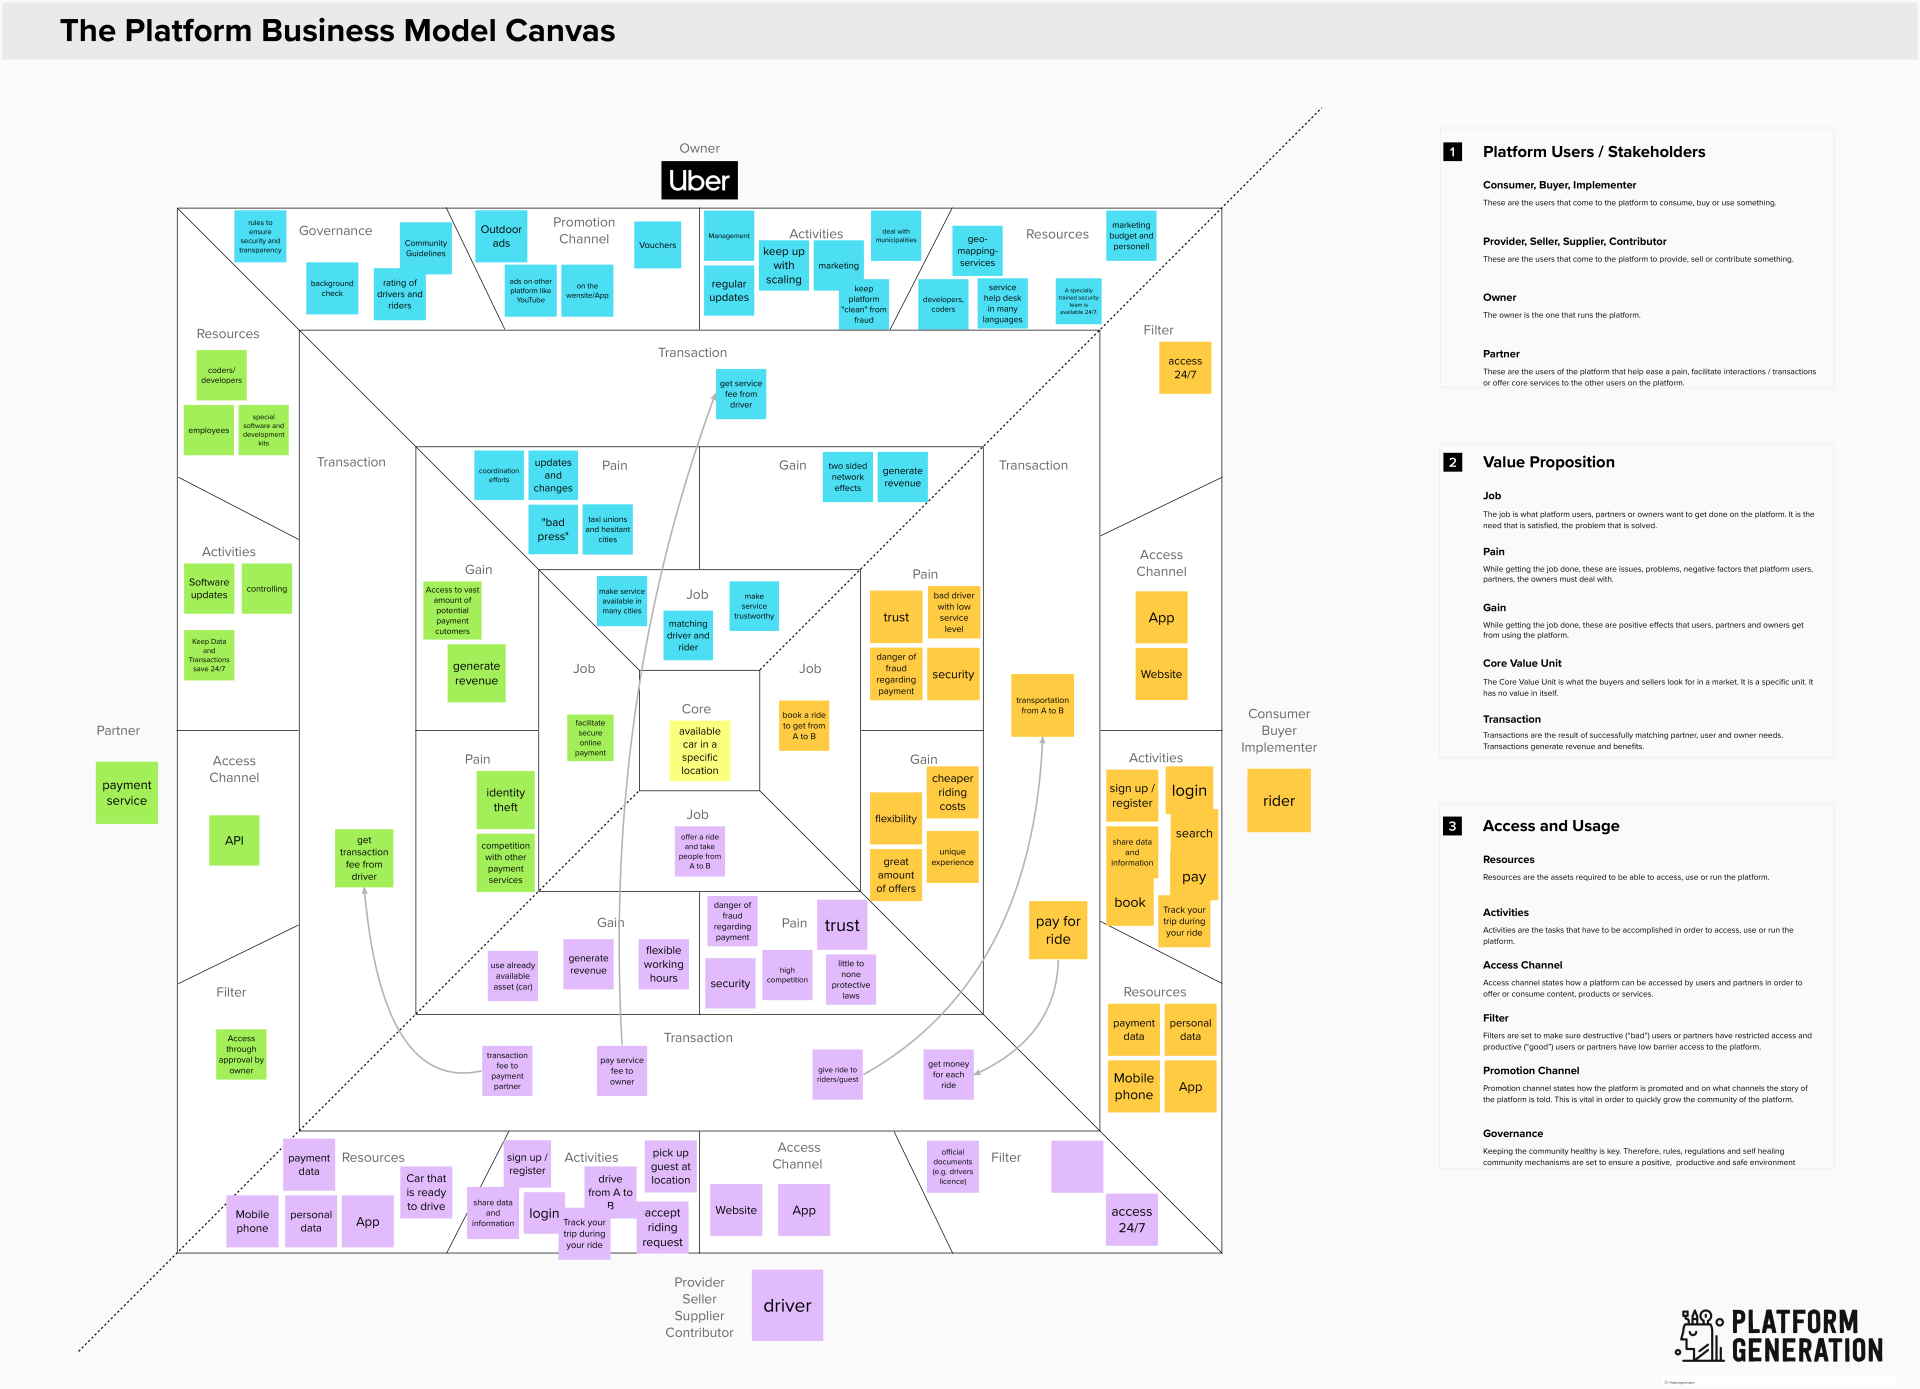 the platform business model canvas of Uber